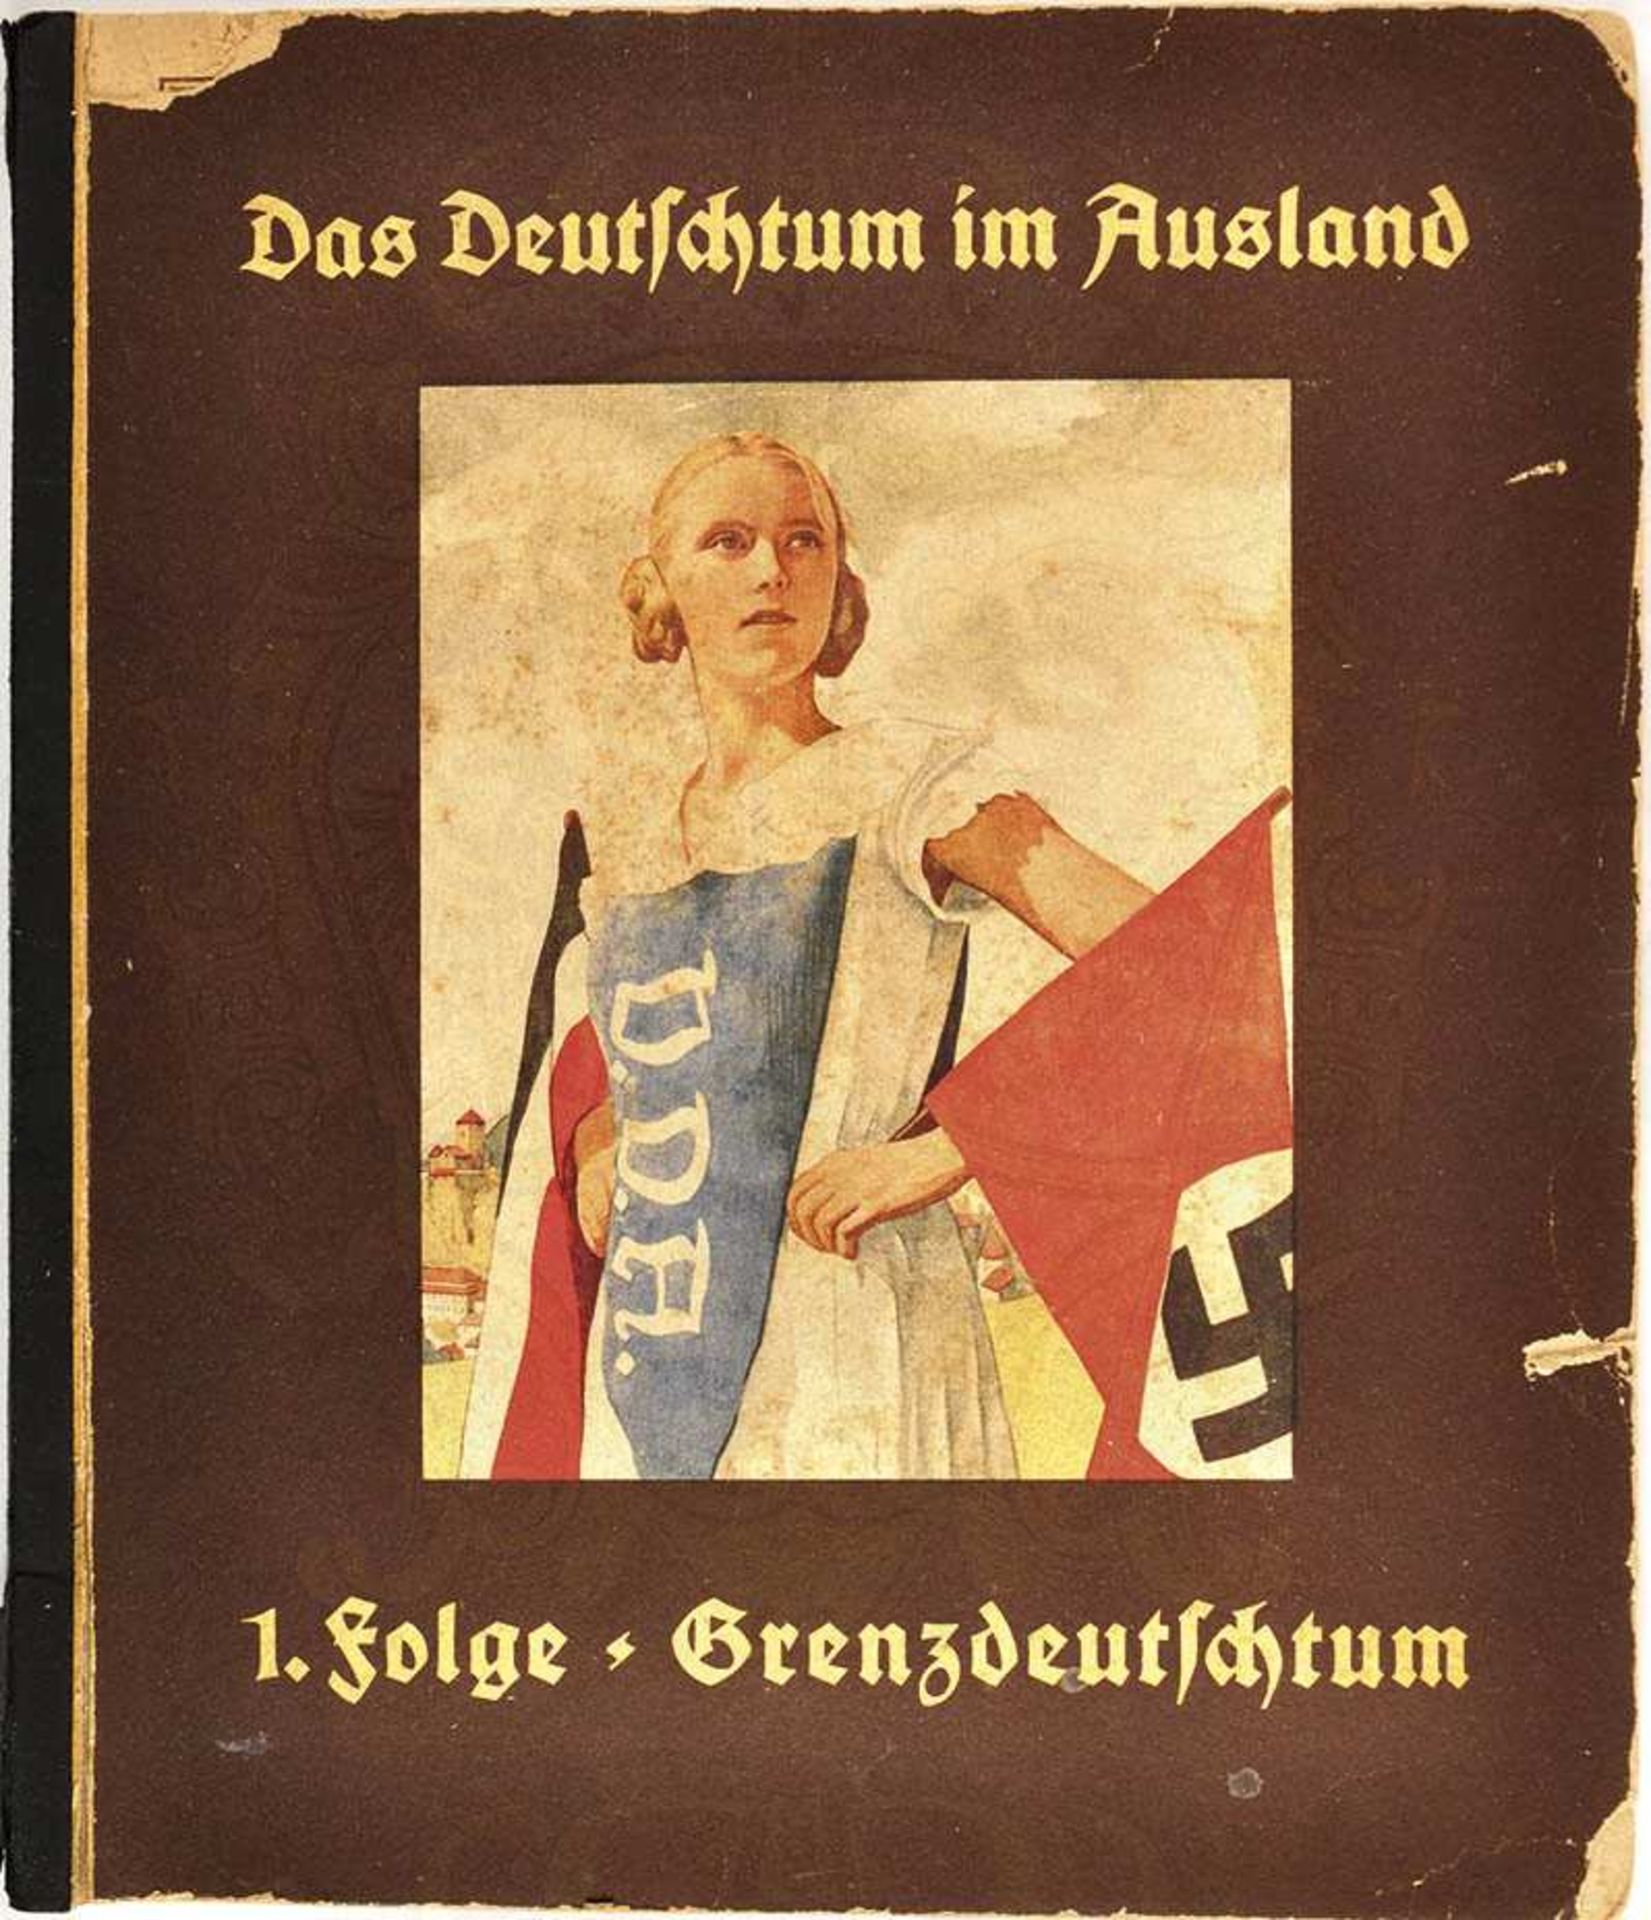 DAS DEUTSCHTUM IM AUSLAND, 1. Folge "Grenzdeutschtum", Hrsg.: VDA, Hannover, 150 farbige Bilder (